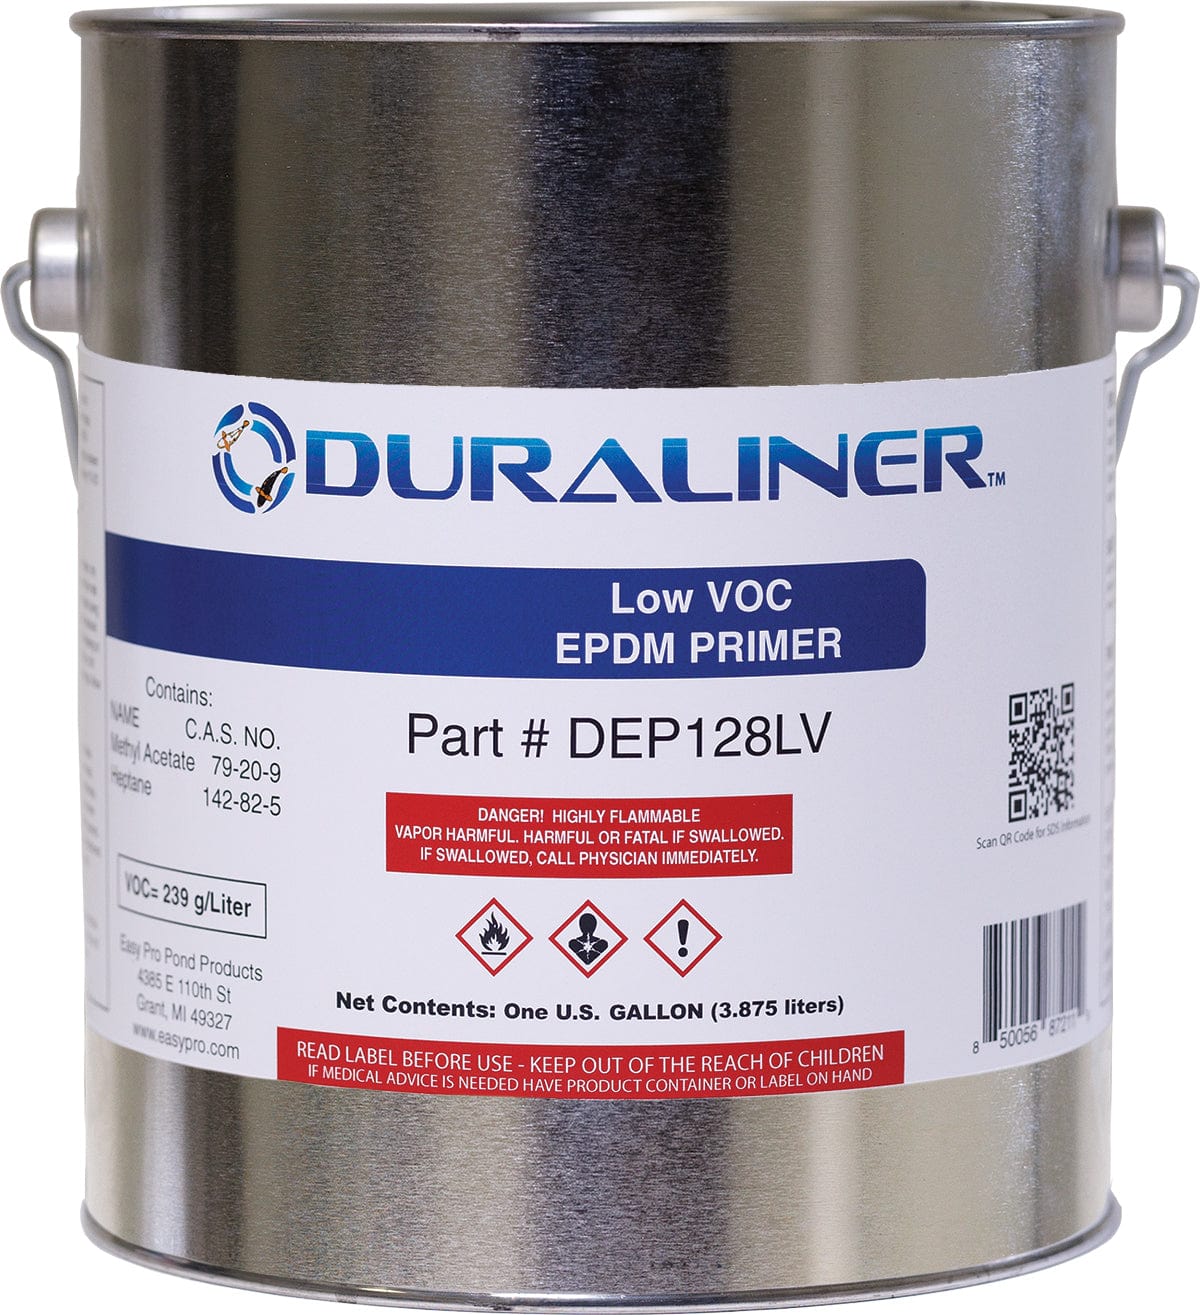 EasyPro Pond Liner and Accessories LVOC EPDM Primer- 1 gal. DuraLiner EPDM Primer